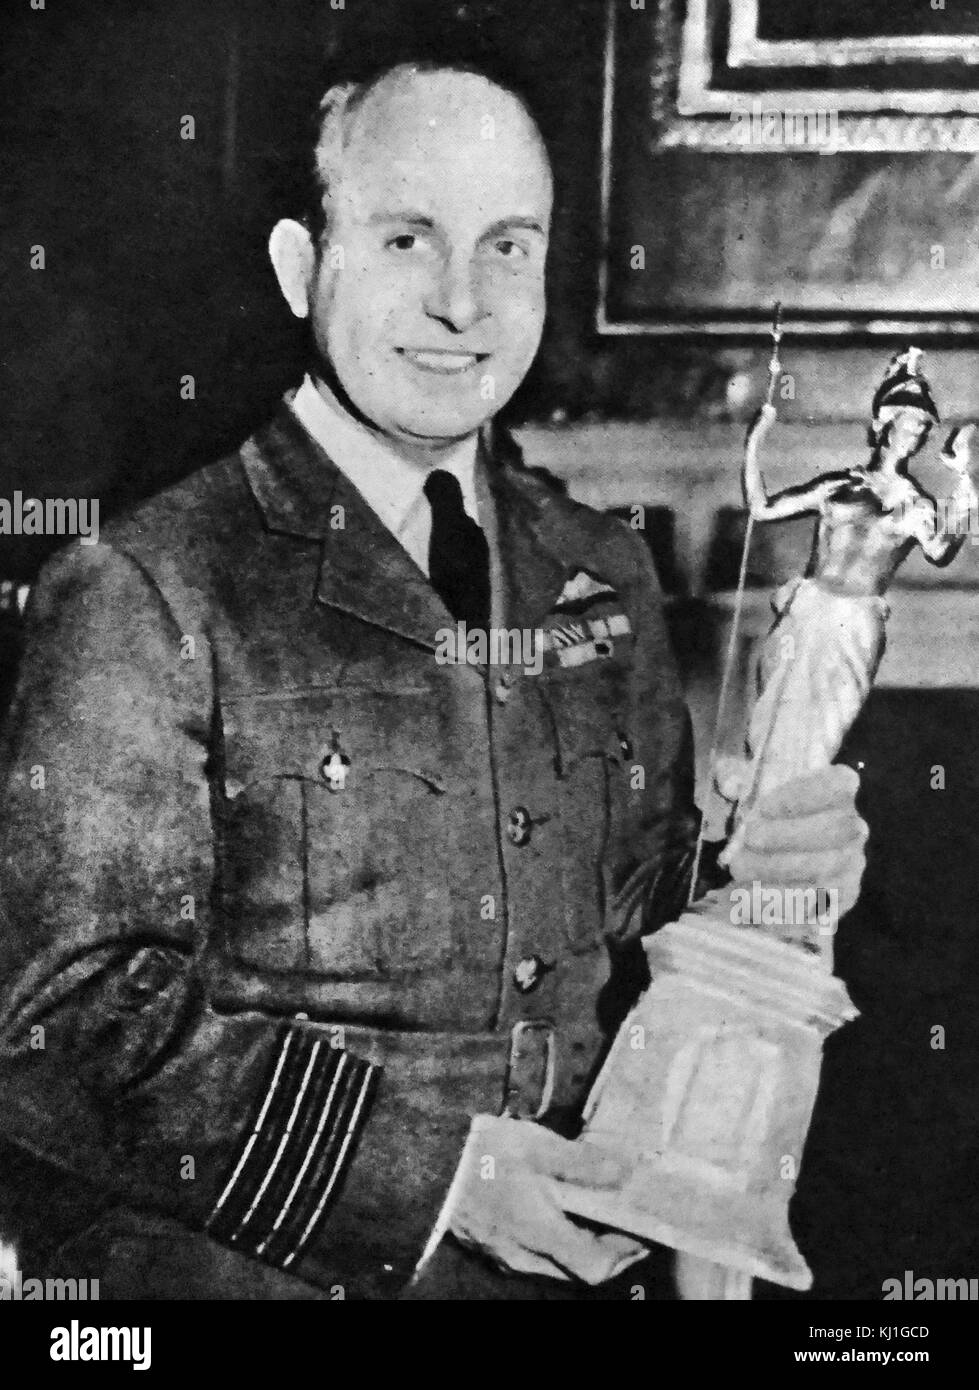 Le Commodore de l'air Edward 'Teddy' Mortlock Donaldson (1912 - 1992). Royal Air Force (RAF) flying ace de la Seconde Guerre mondiale, et un ancien porteur de la vitesse record du monde. vu tenant le trophée Britannia en 1946 Banque D'Images